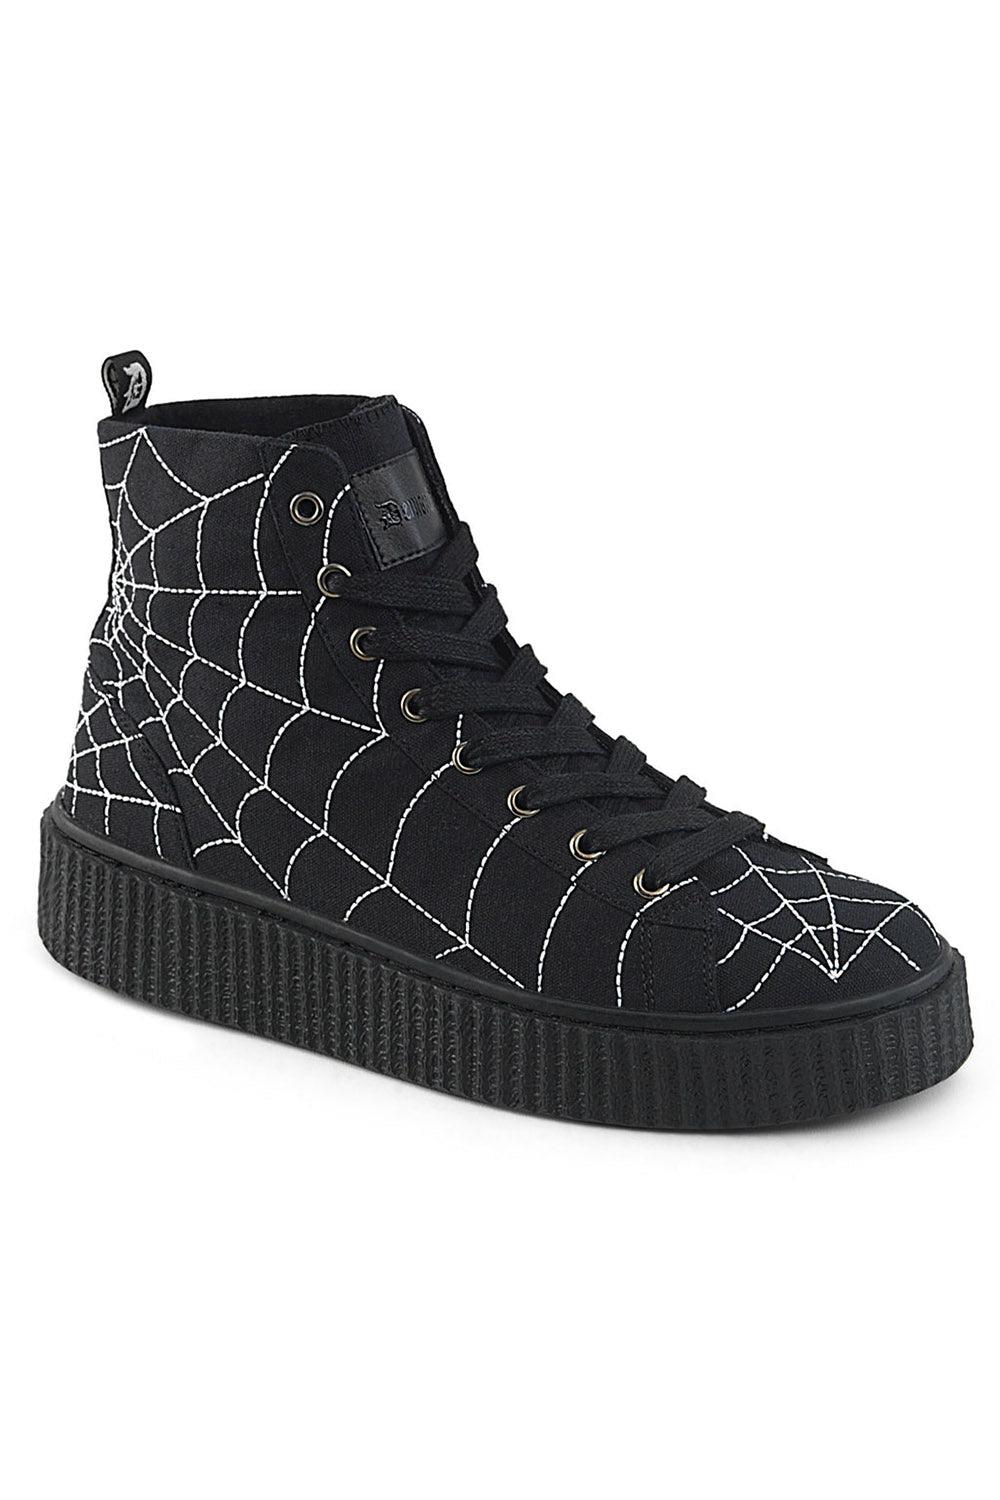 Demonia Arachnophobia Creeper Sneakers [SNEEKER-250 High Tops] - VampireFreaks